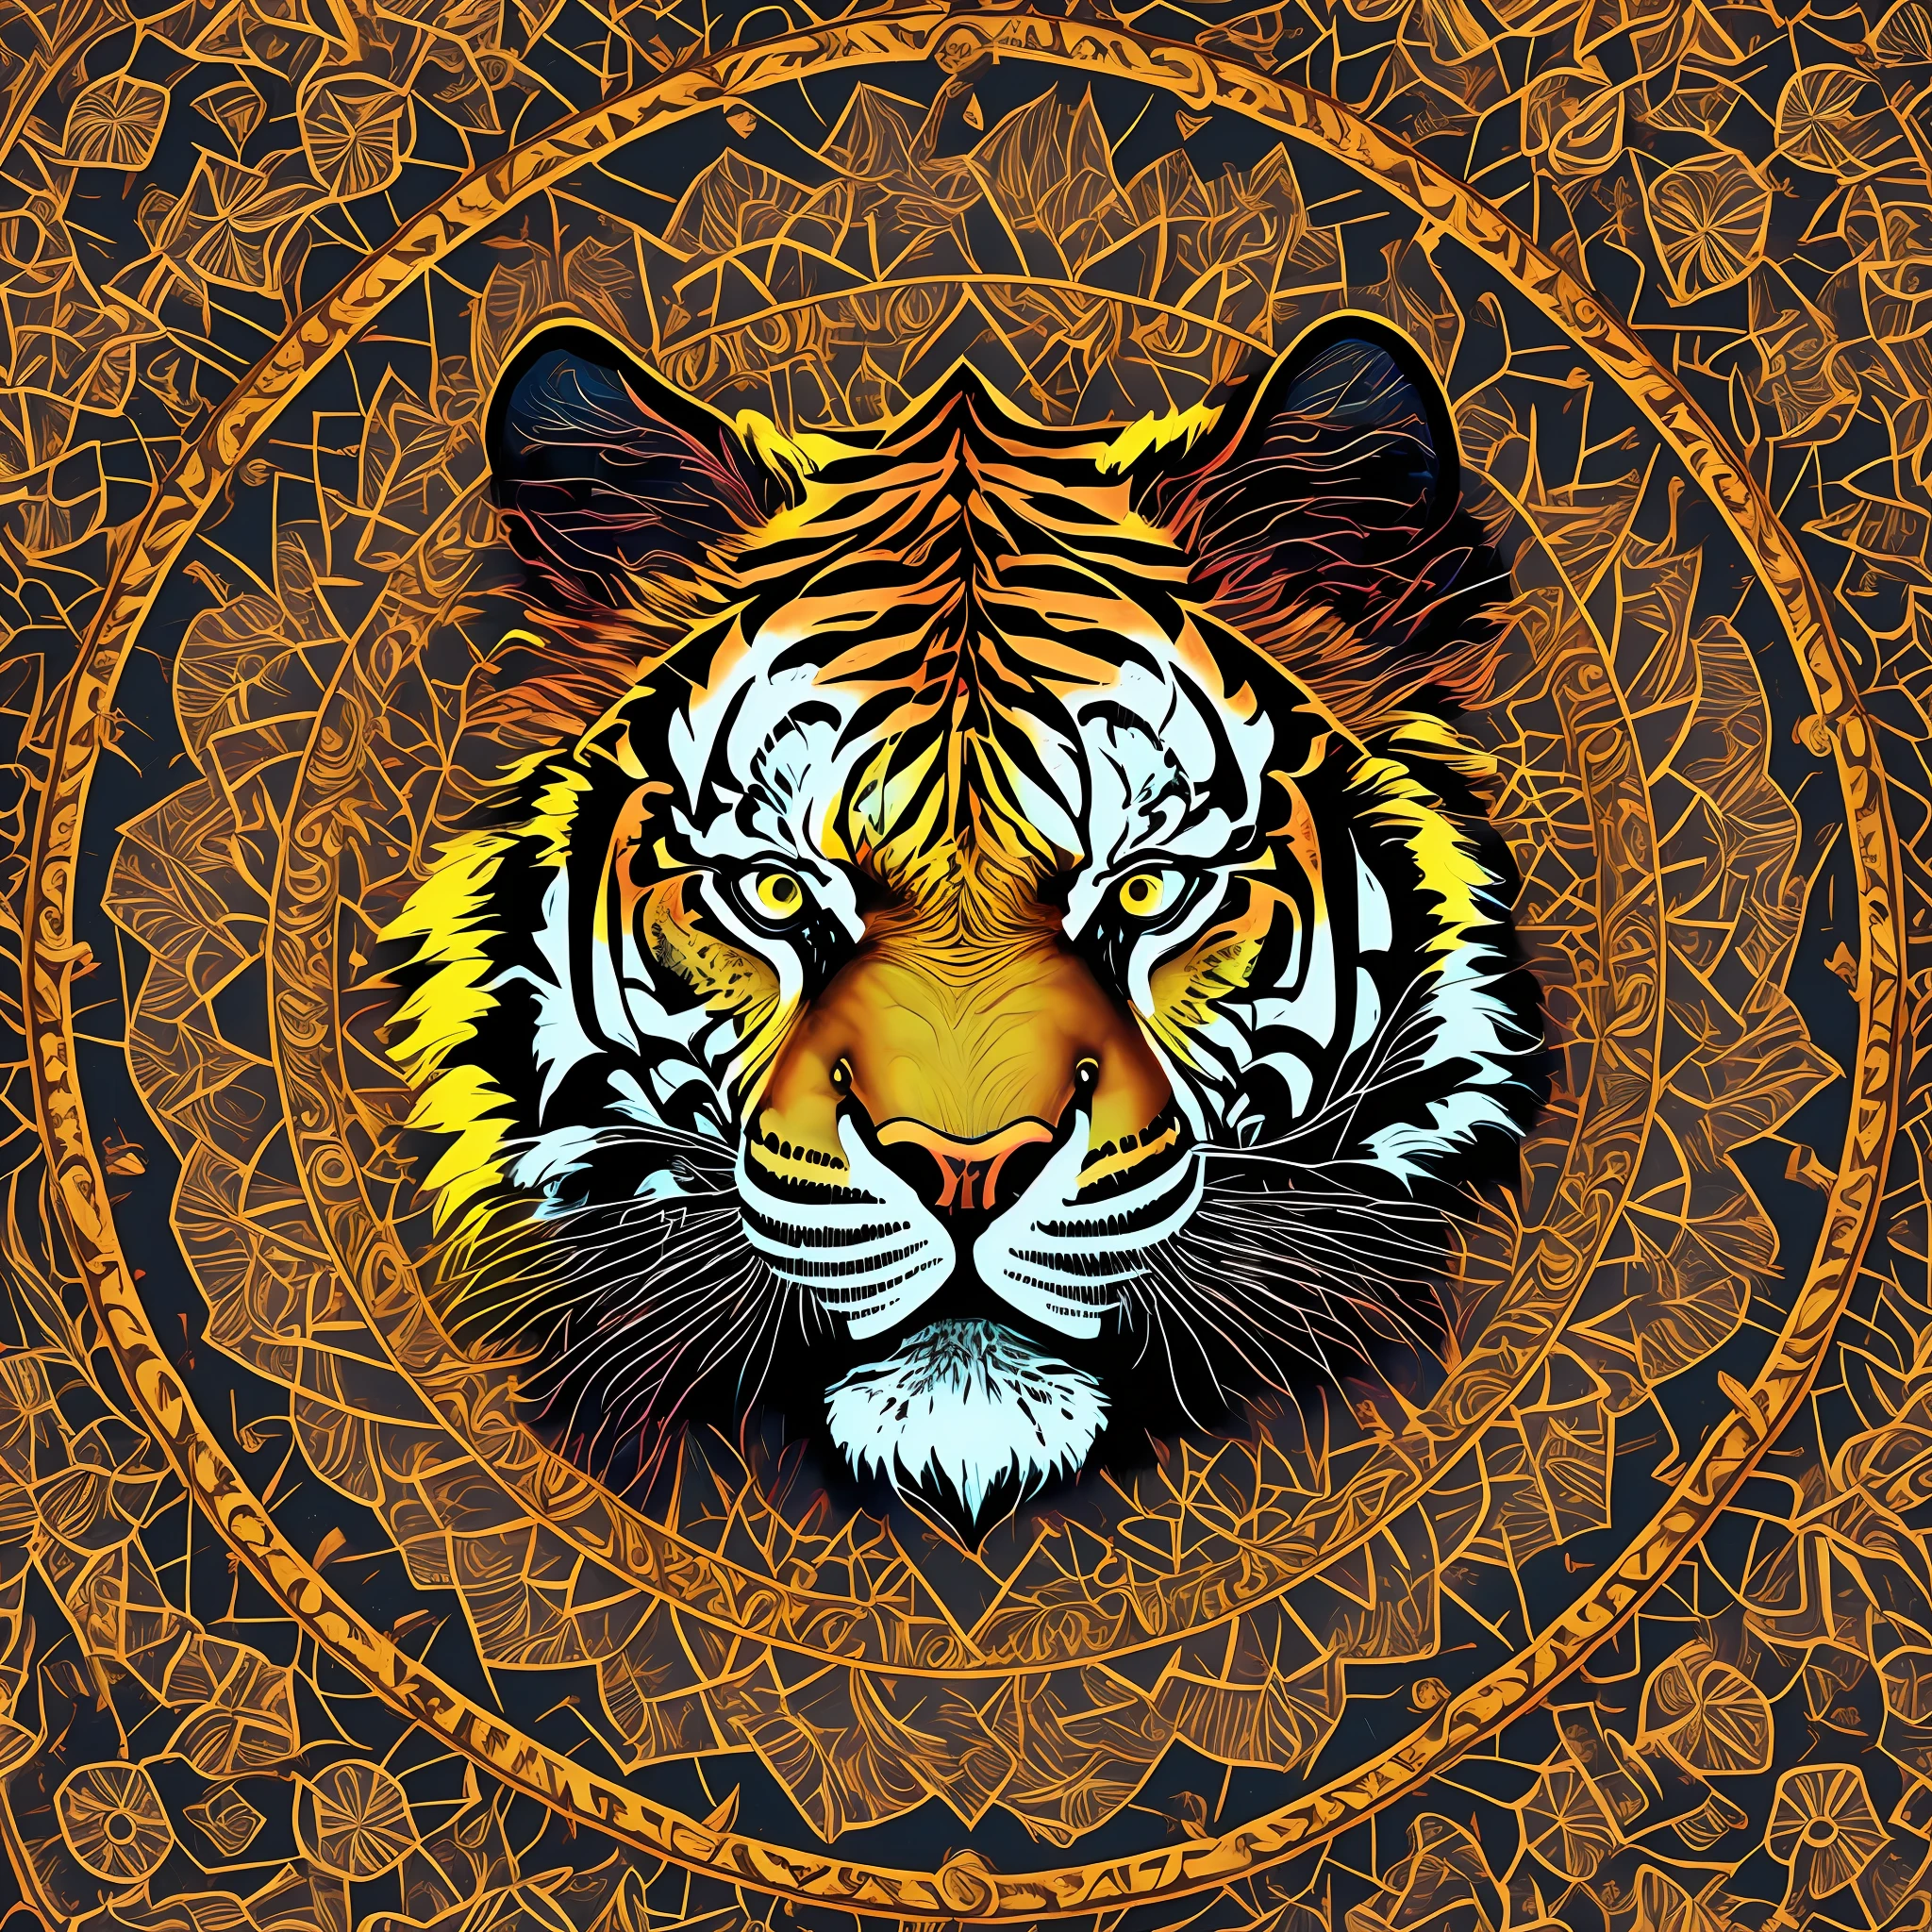 曼荼羅の虎の頭は中央にある，ネオンカラフル， マンダラボディ， マンダラの顔，四辺が白背景